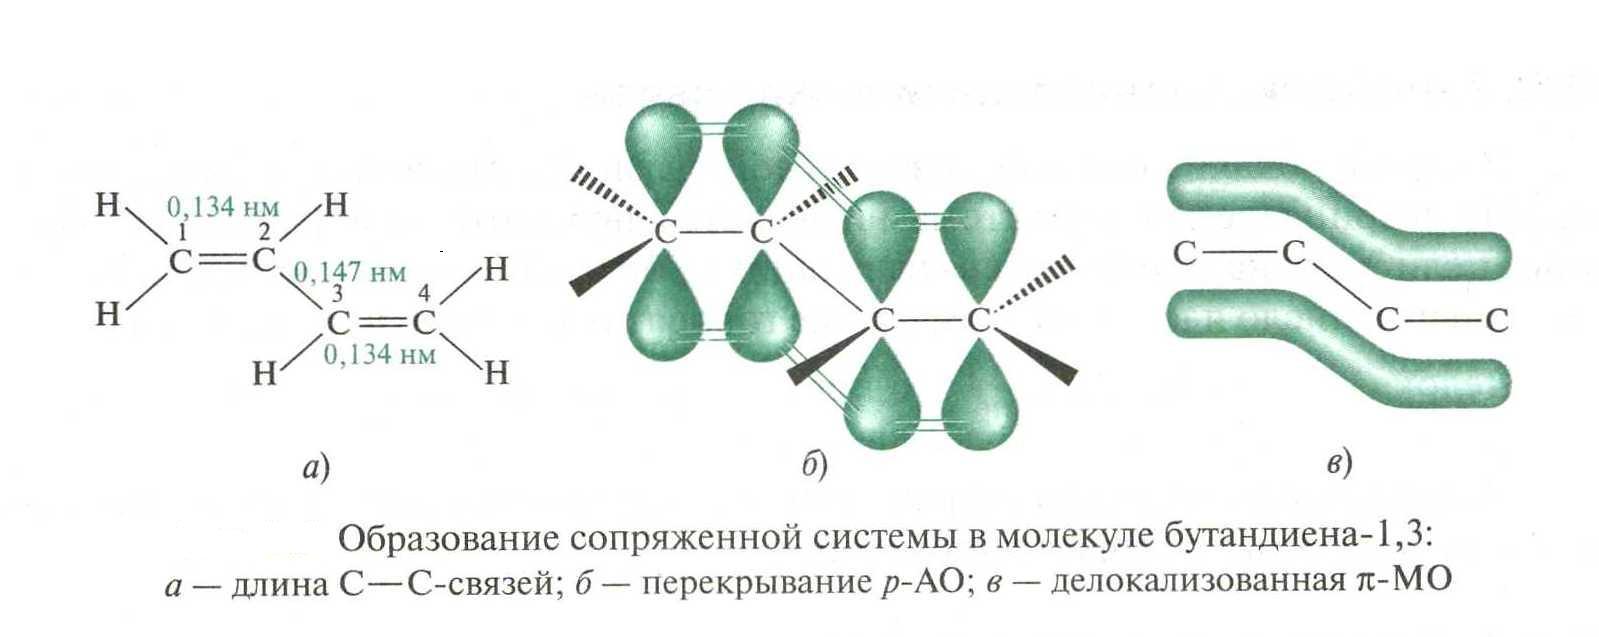 Сопряженные связи в молекулах. Электронное строение молекулы бутадиена-1.3. Строение молекулы бутадиена 1.3. Сопряженные системы бутадиен 1 3. Система сопряженных связей в молекулах.